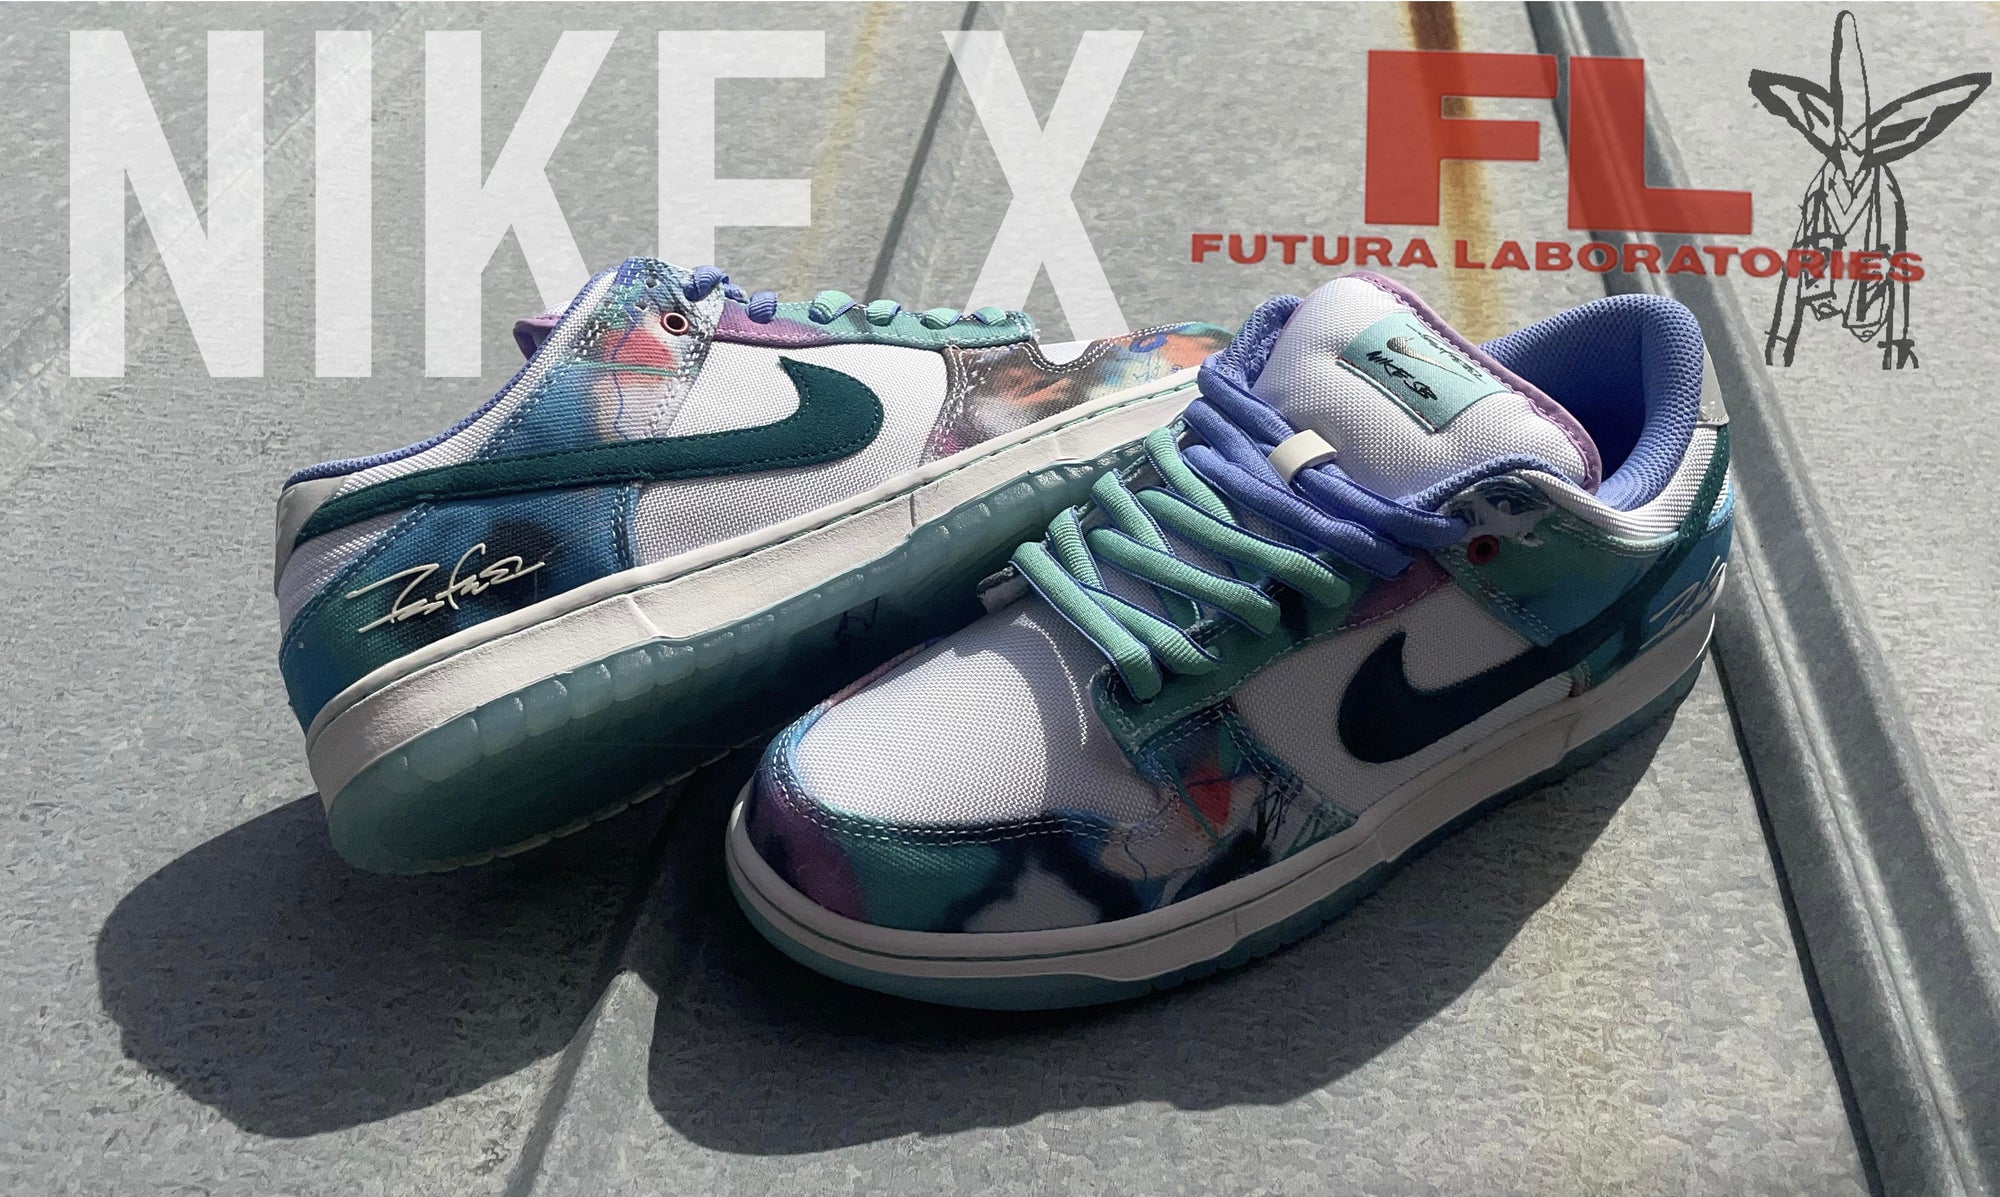 Nike SB X Futura Laboratories Dunk Low